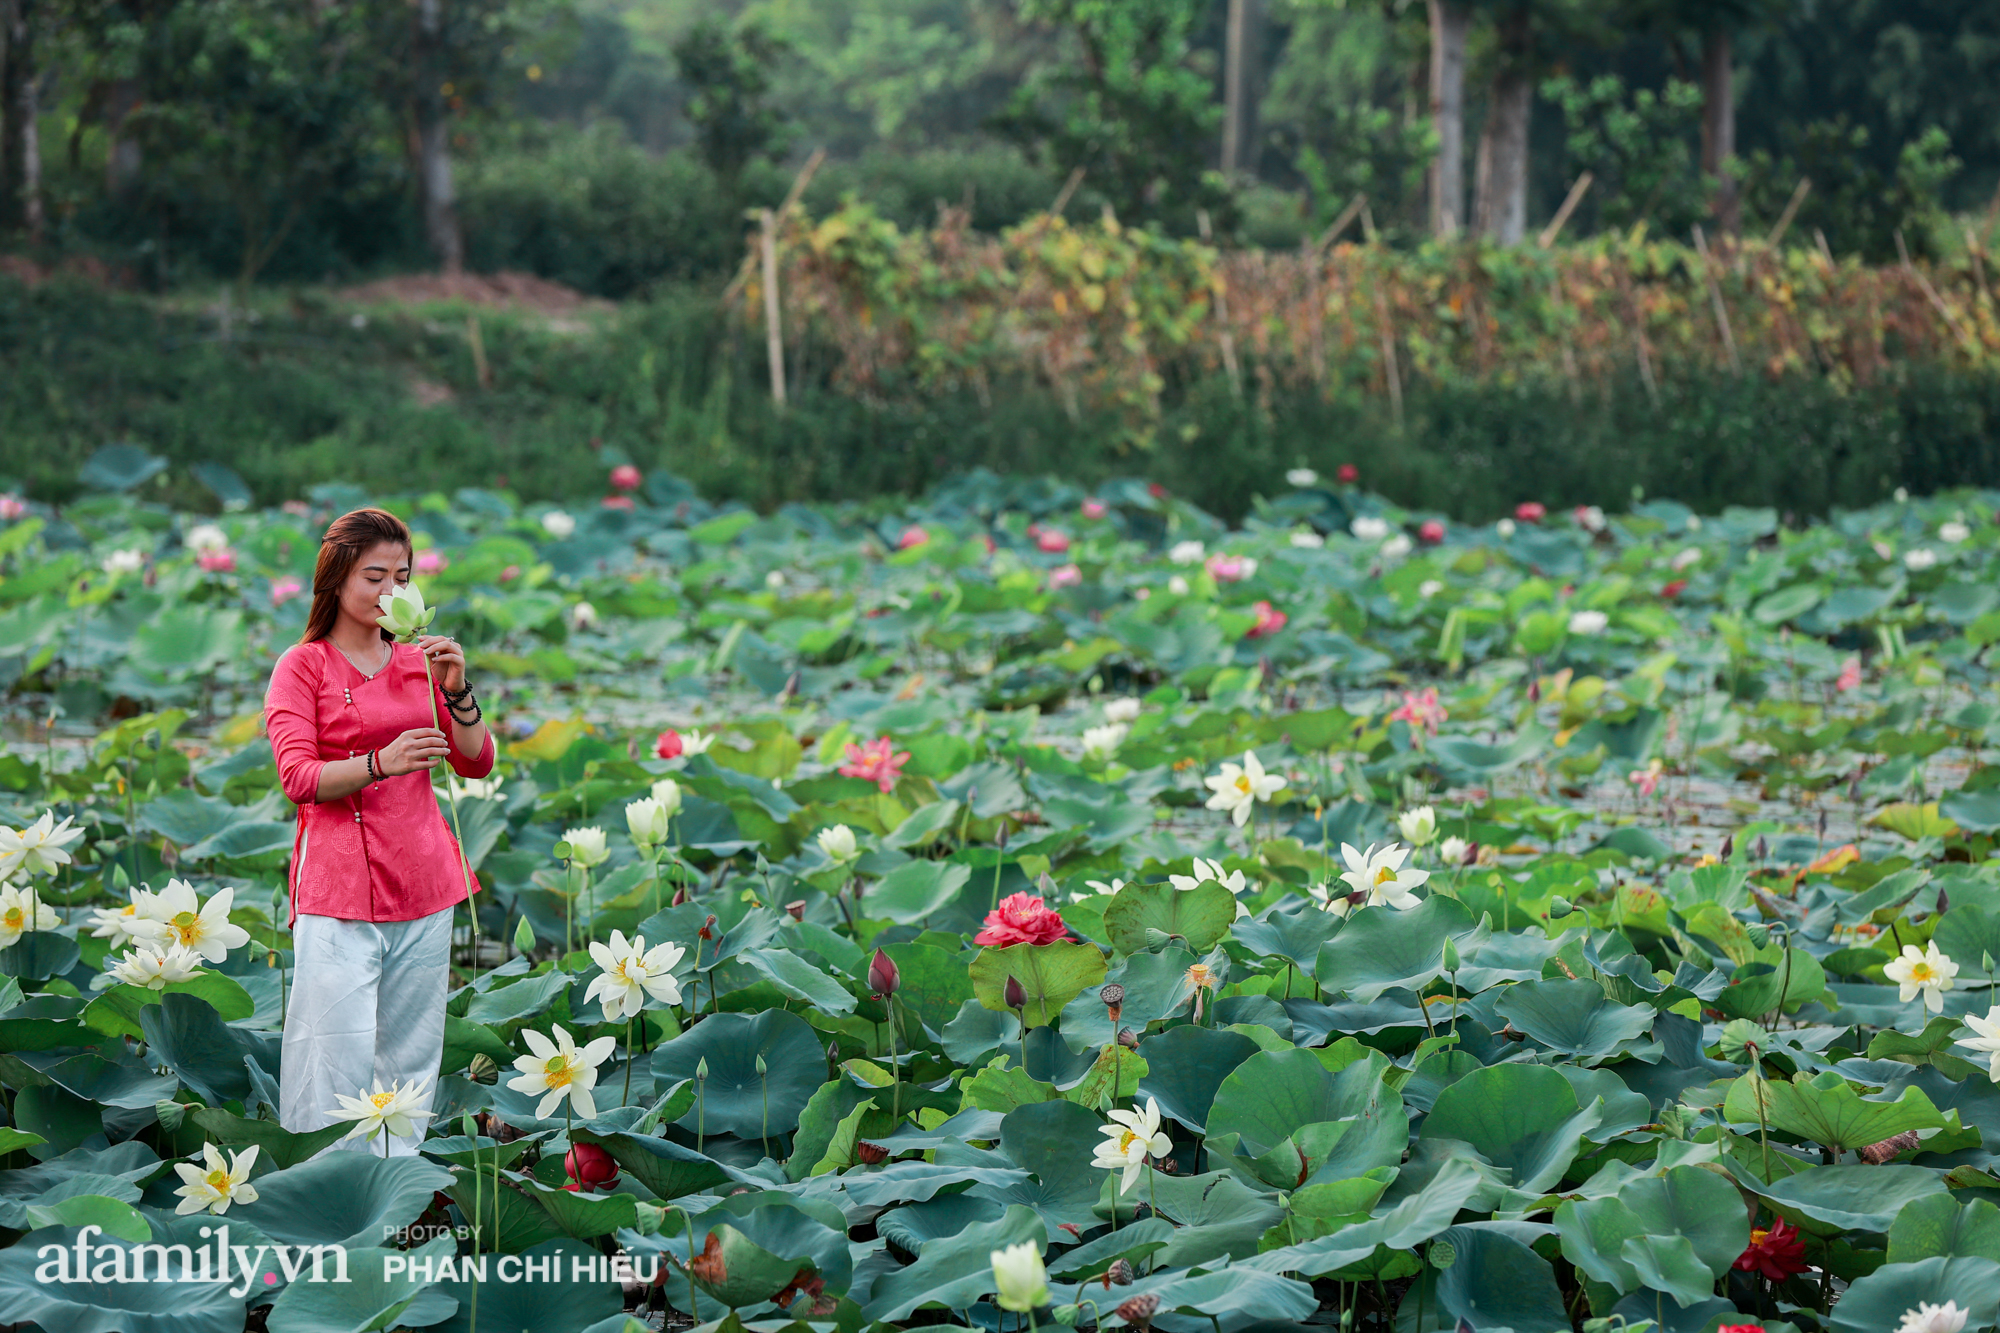 Ngợp với đầm sen nhiều loại nhất Việt Nam đang thi nhau đua nở, muốn hưởng trọn hương sắc phải cầu kỳ có mặt từ lúc sớm tinh mơ - Ảnh 15.